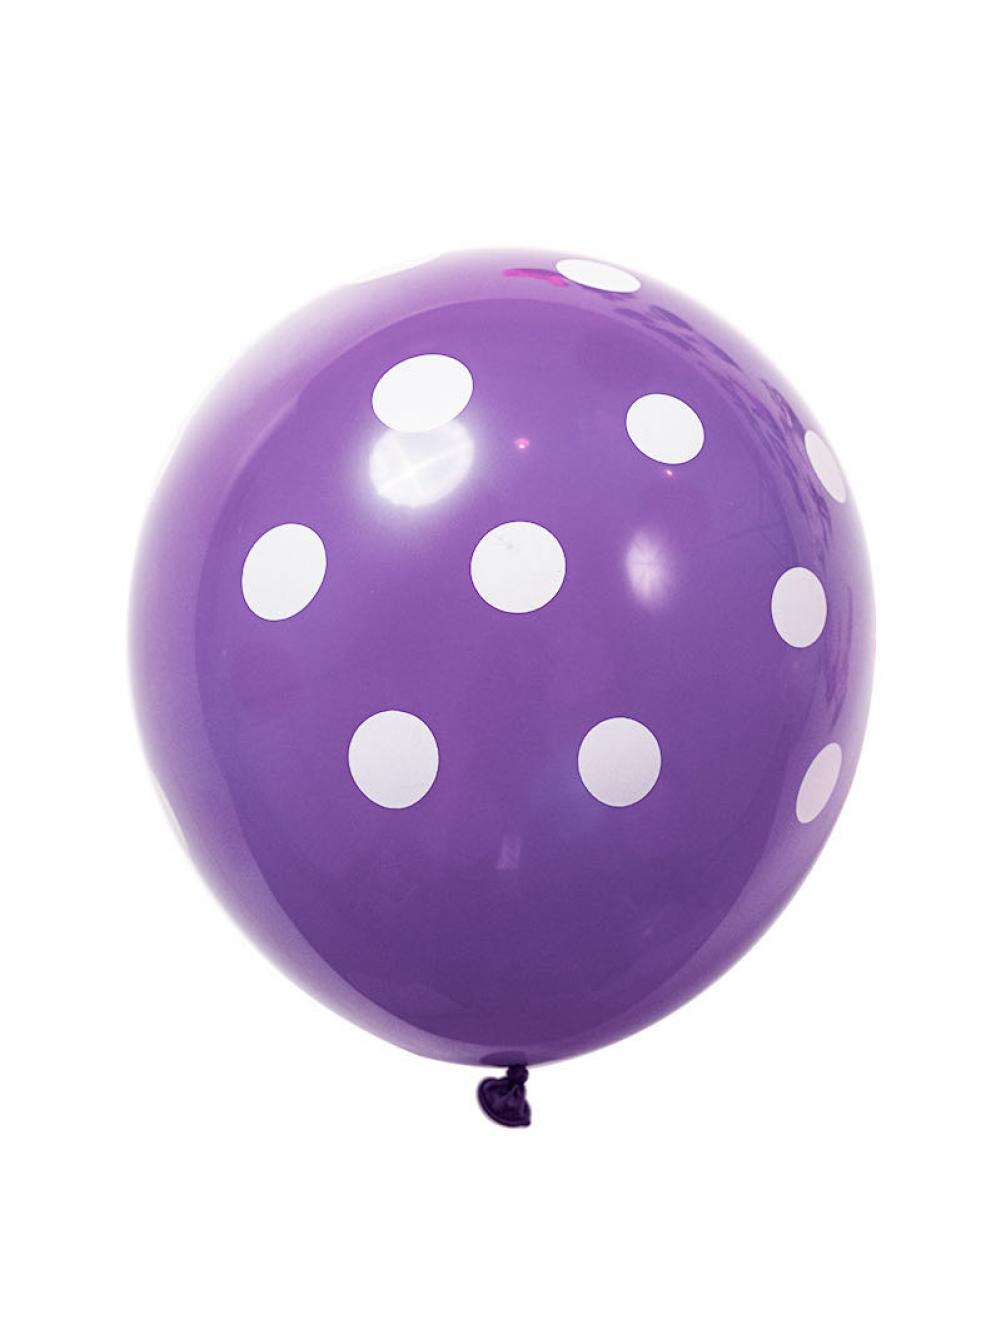 12 Inch Standard Polka Dot Balloons Purple Balloon White Dot (10PCS)